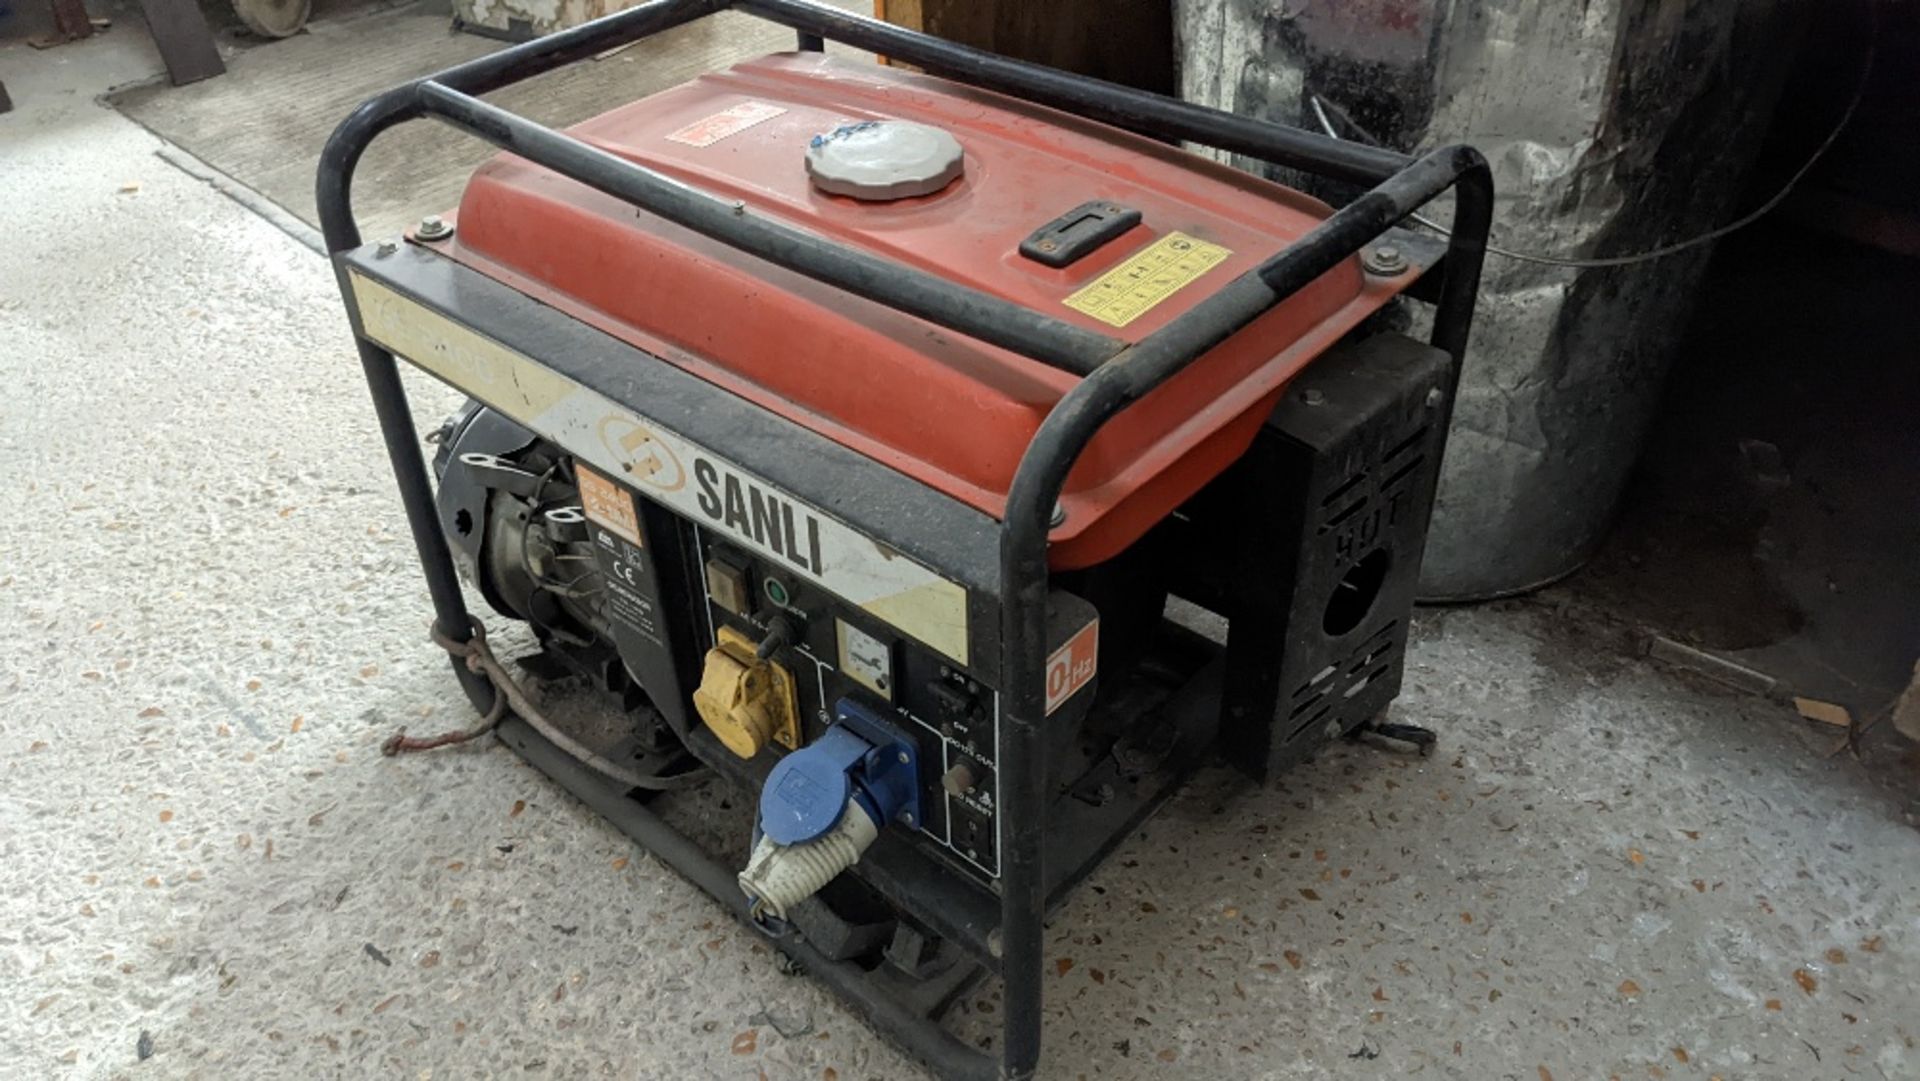 SANLI GS 2400 Petrol Generator for Spares or Repairs - Image 2 of 4